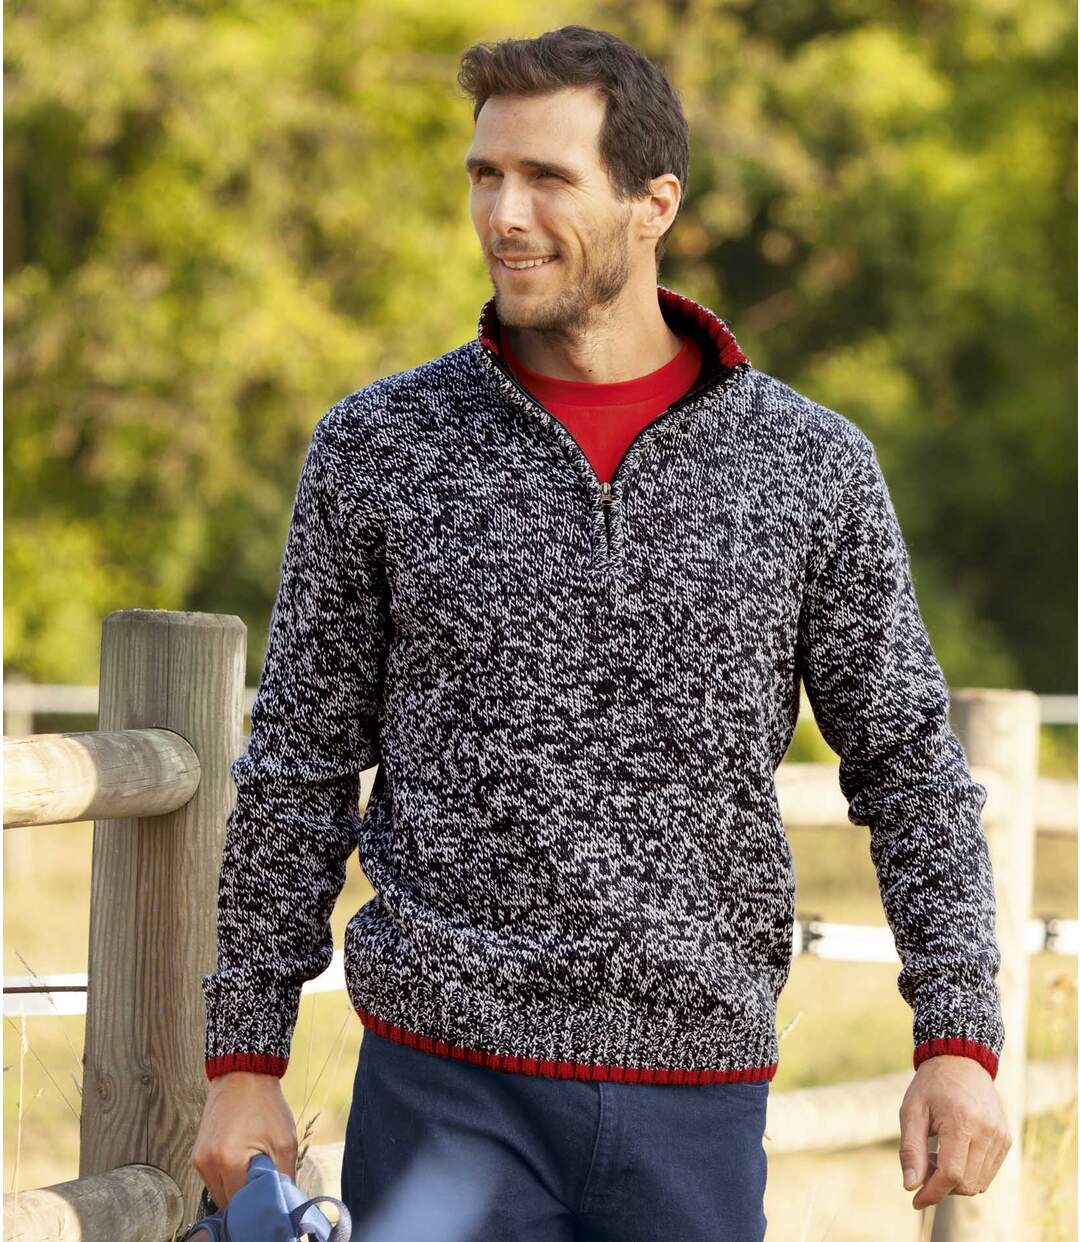 Melanżowy sweter Sportwear Atlas For Men